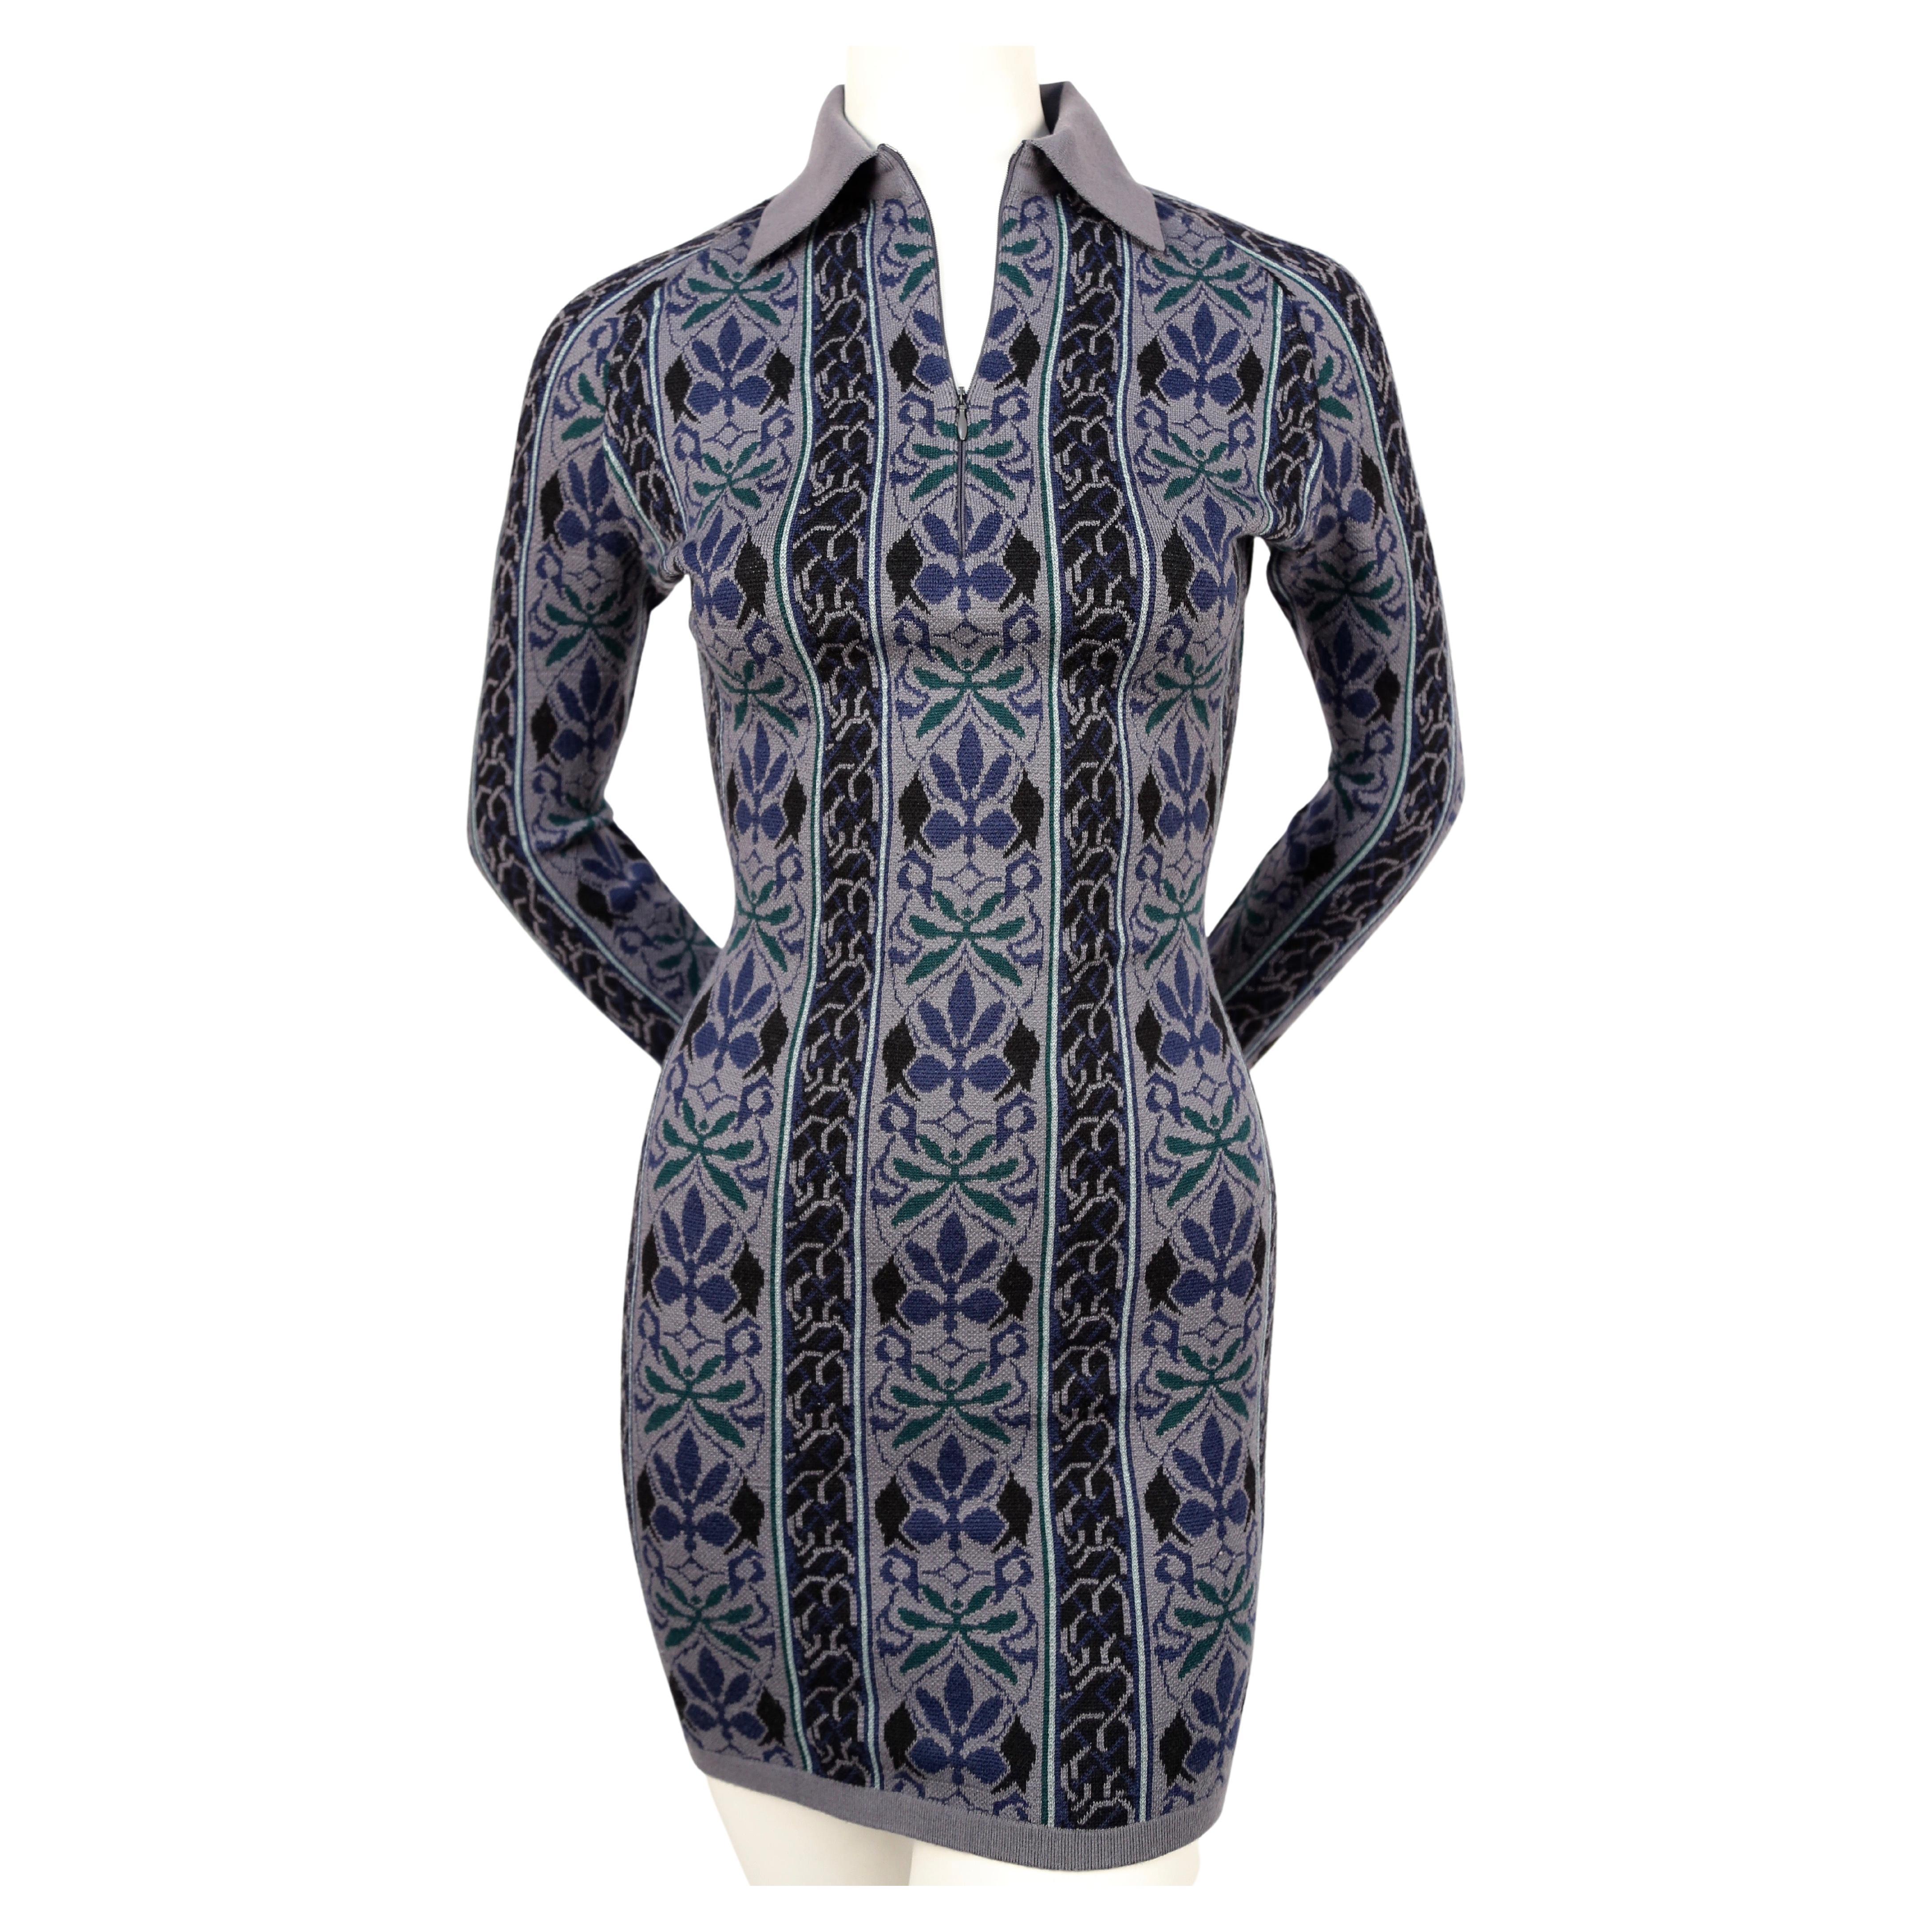 Très rare, robe en maille bleue avec motif floral abstrait tissé, dessinée par Azzedine Alaia et datant de l'automne 1990, telle qu'elle a été vue sur le défilé. La robe est étiquetée taille S. Mesures approximatives (sans étirement) : épaule 14